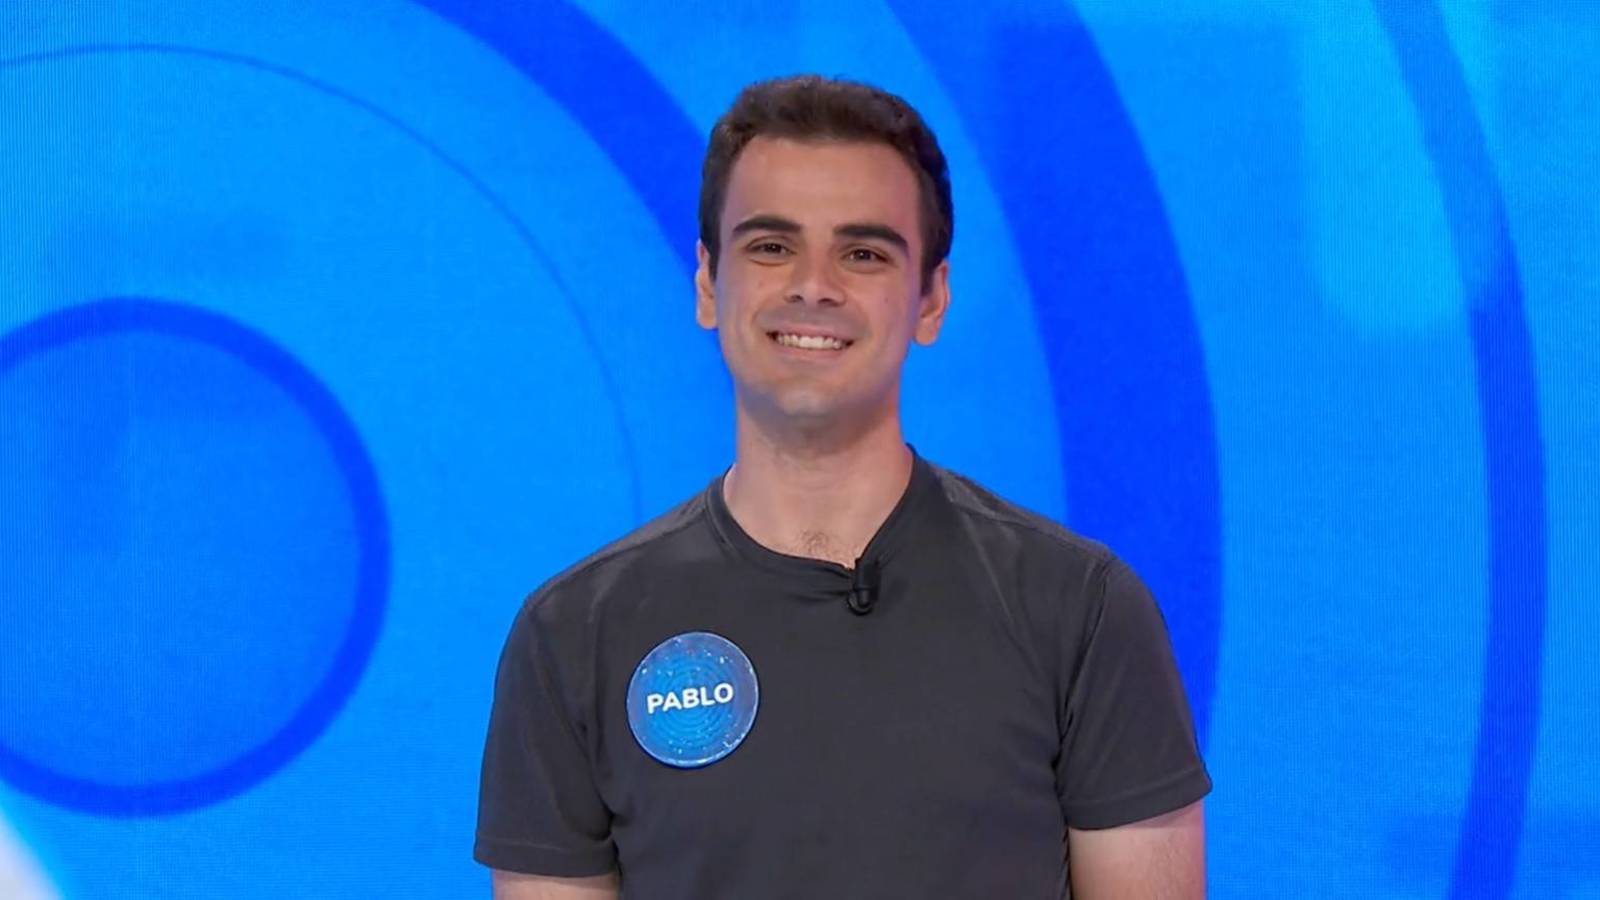 Pablo Díaz Pasapalabra